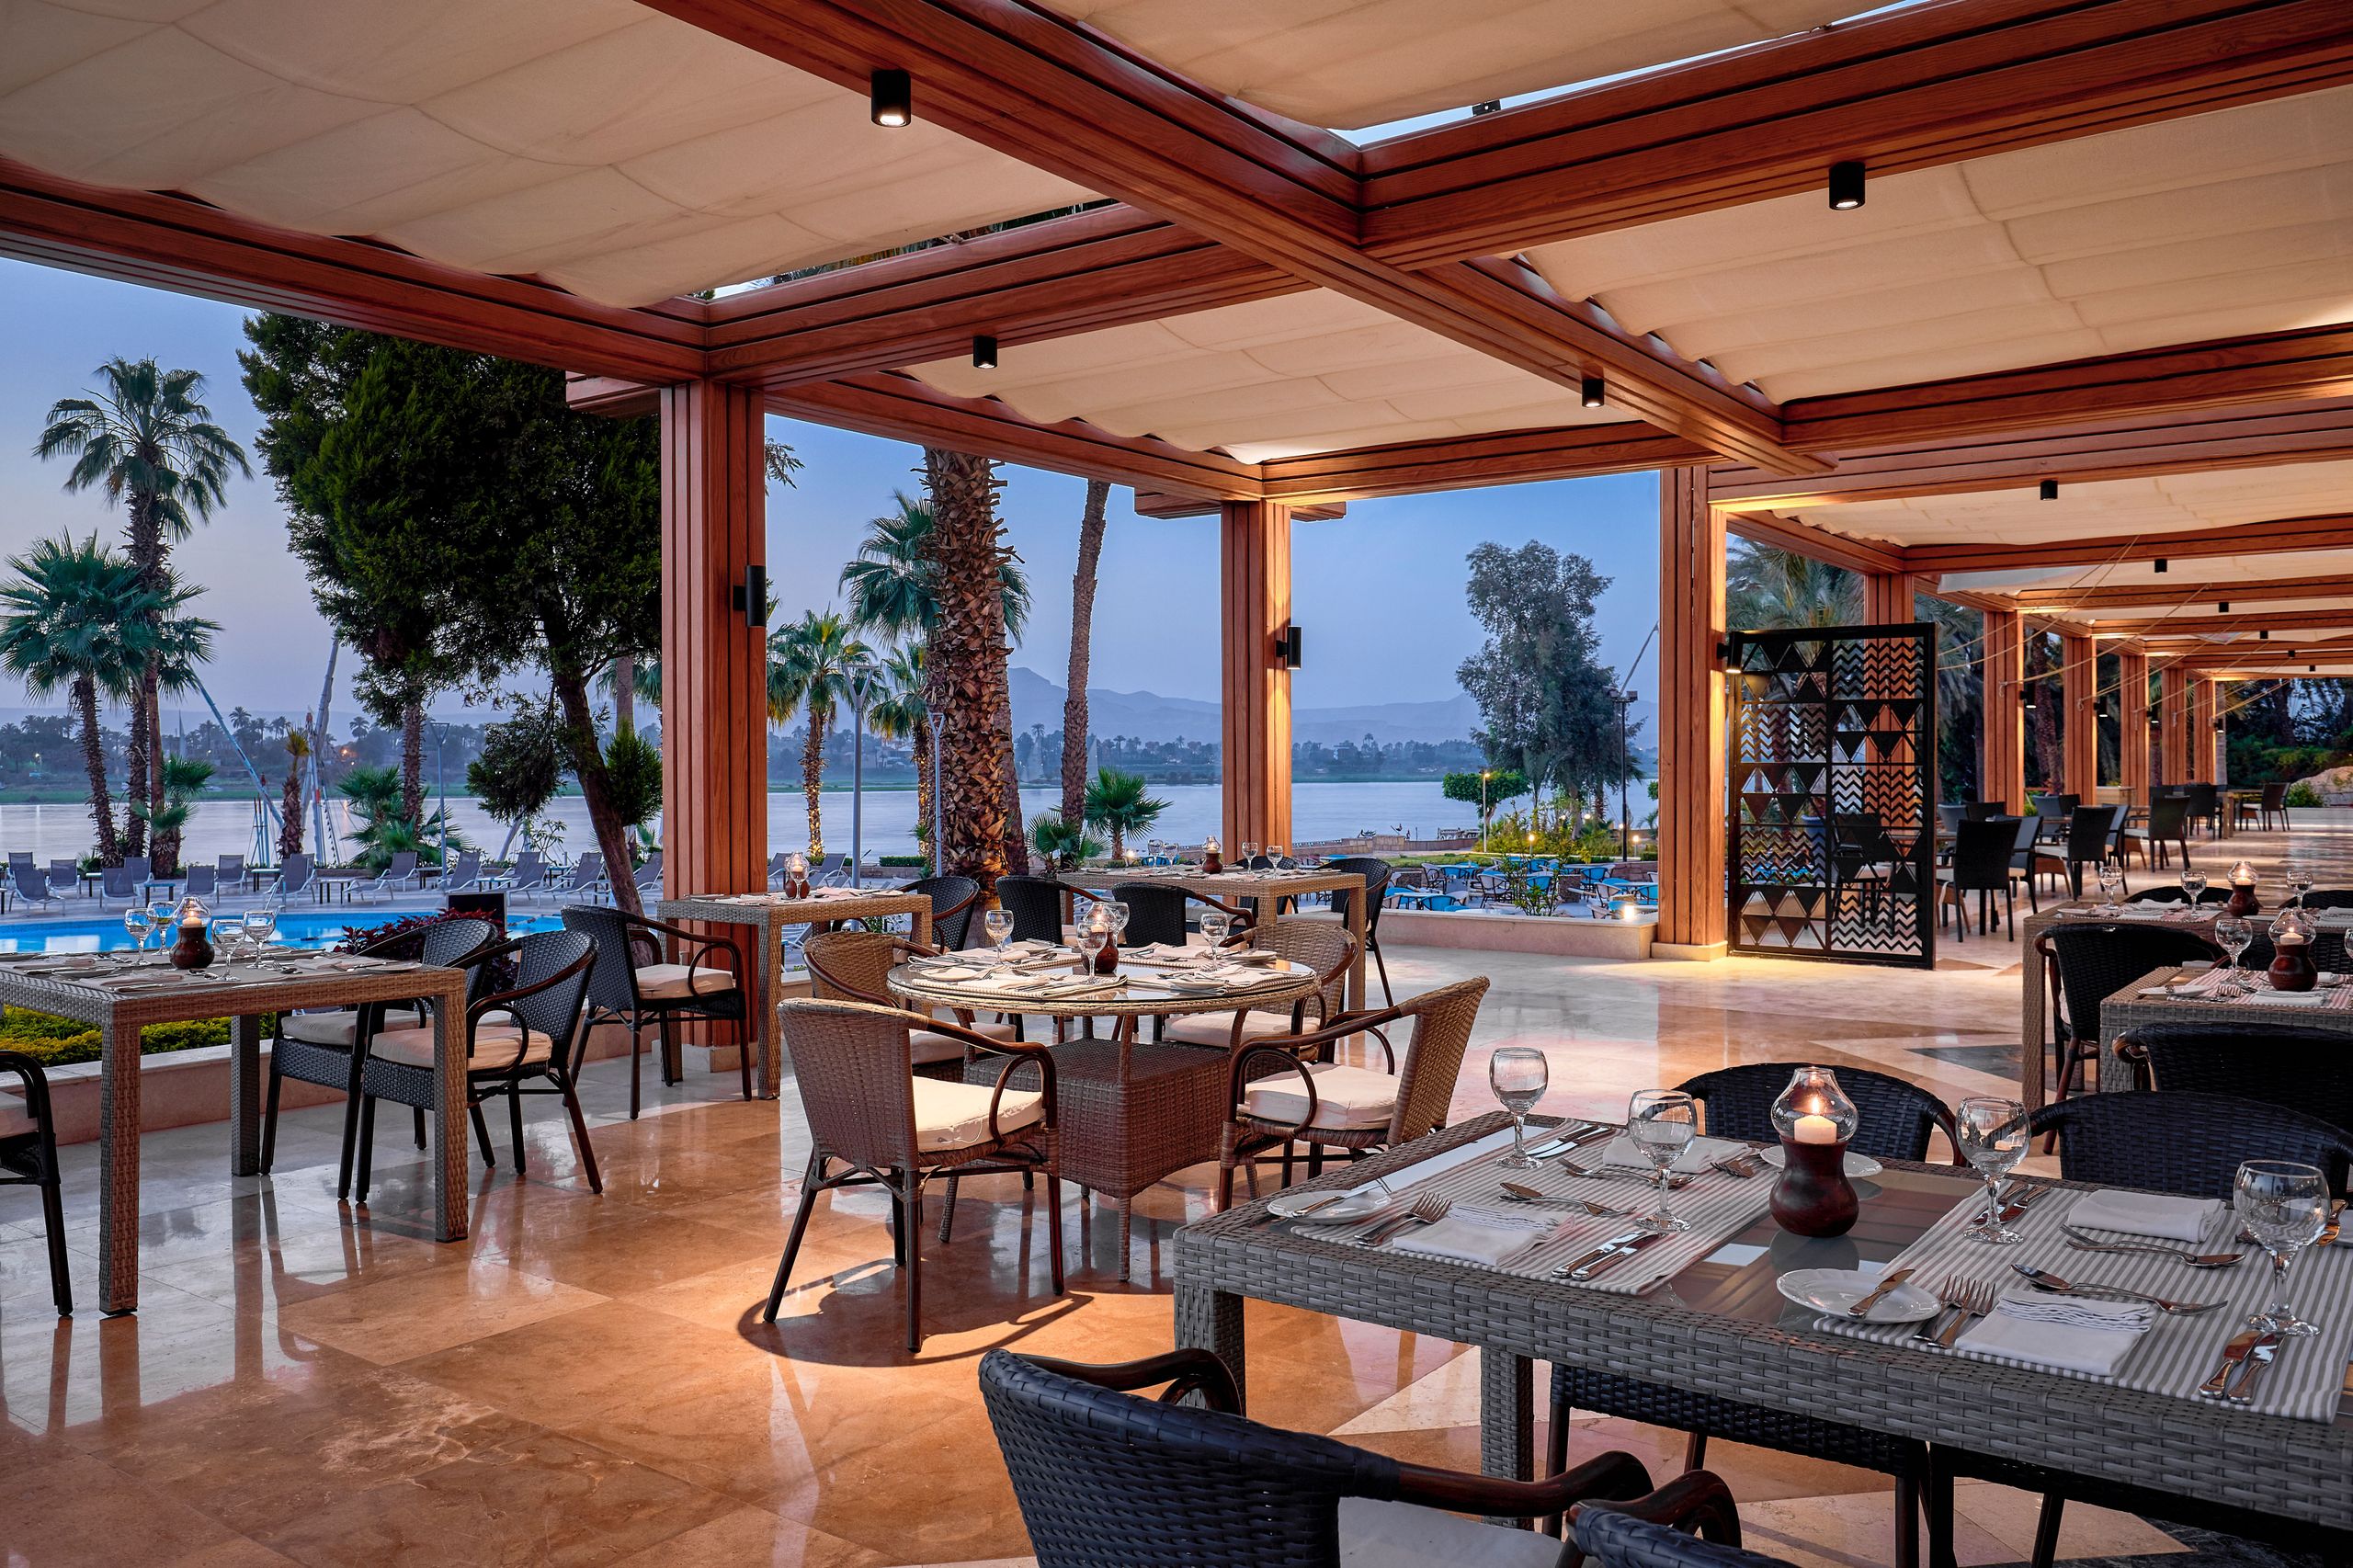 Steigenberger Resort Achti, Luxor/Egypt - Mezzeria Restaurant